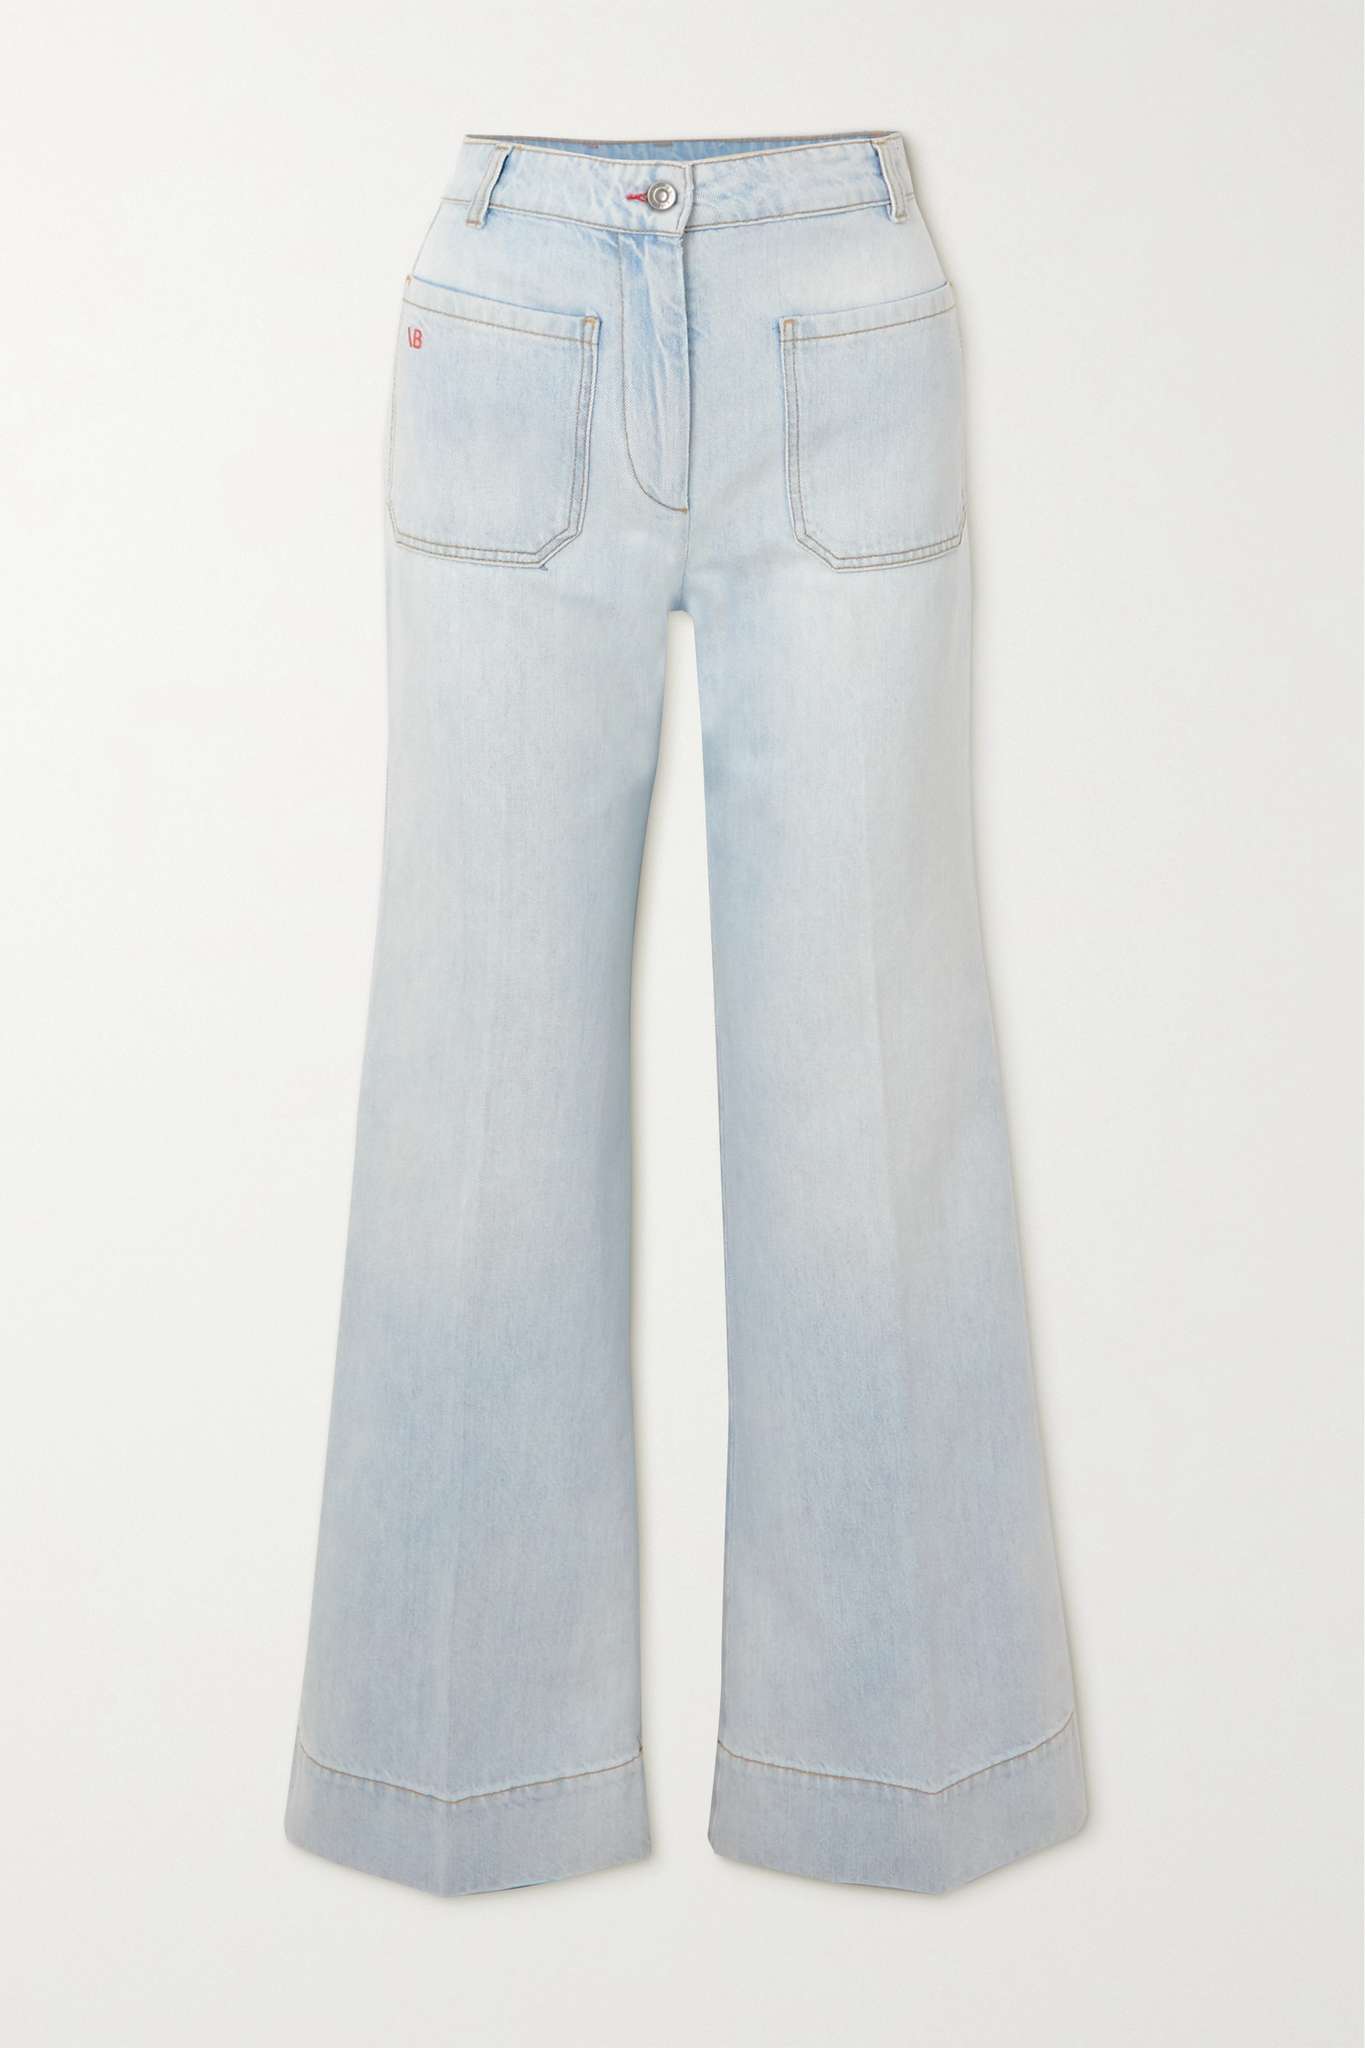  Запомните мои слова: тренд на не облегающие джинсы снова возвращается